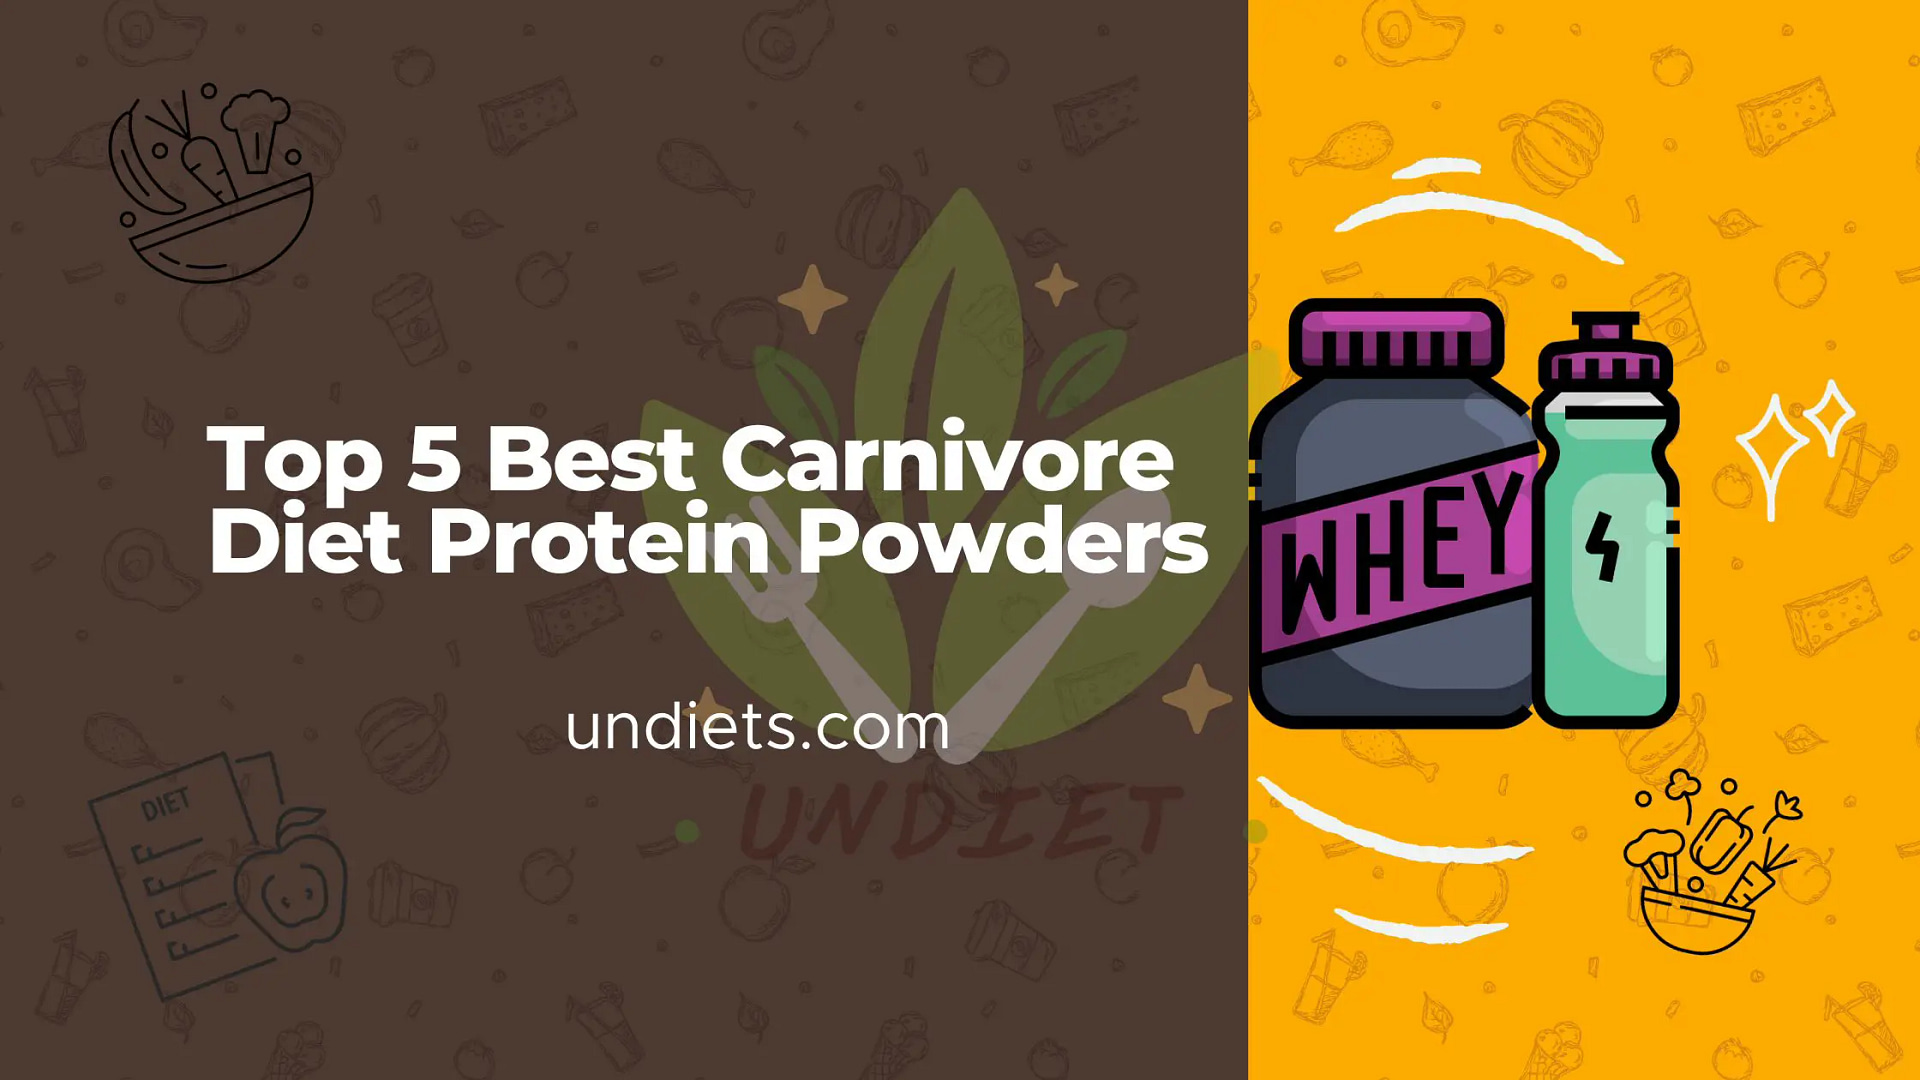 Top 5 Best Carnivore Diet Protein Powders